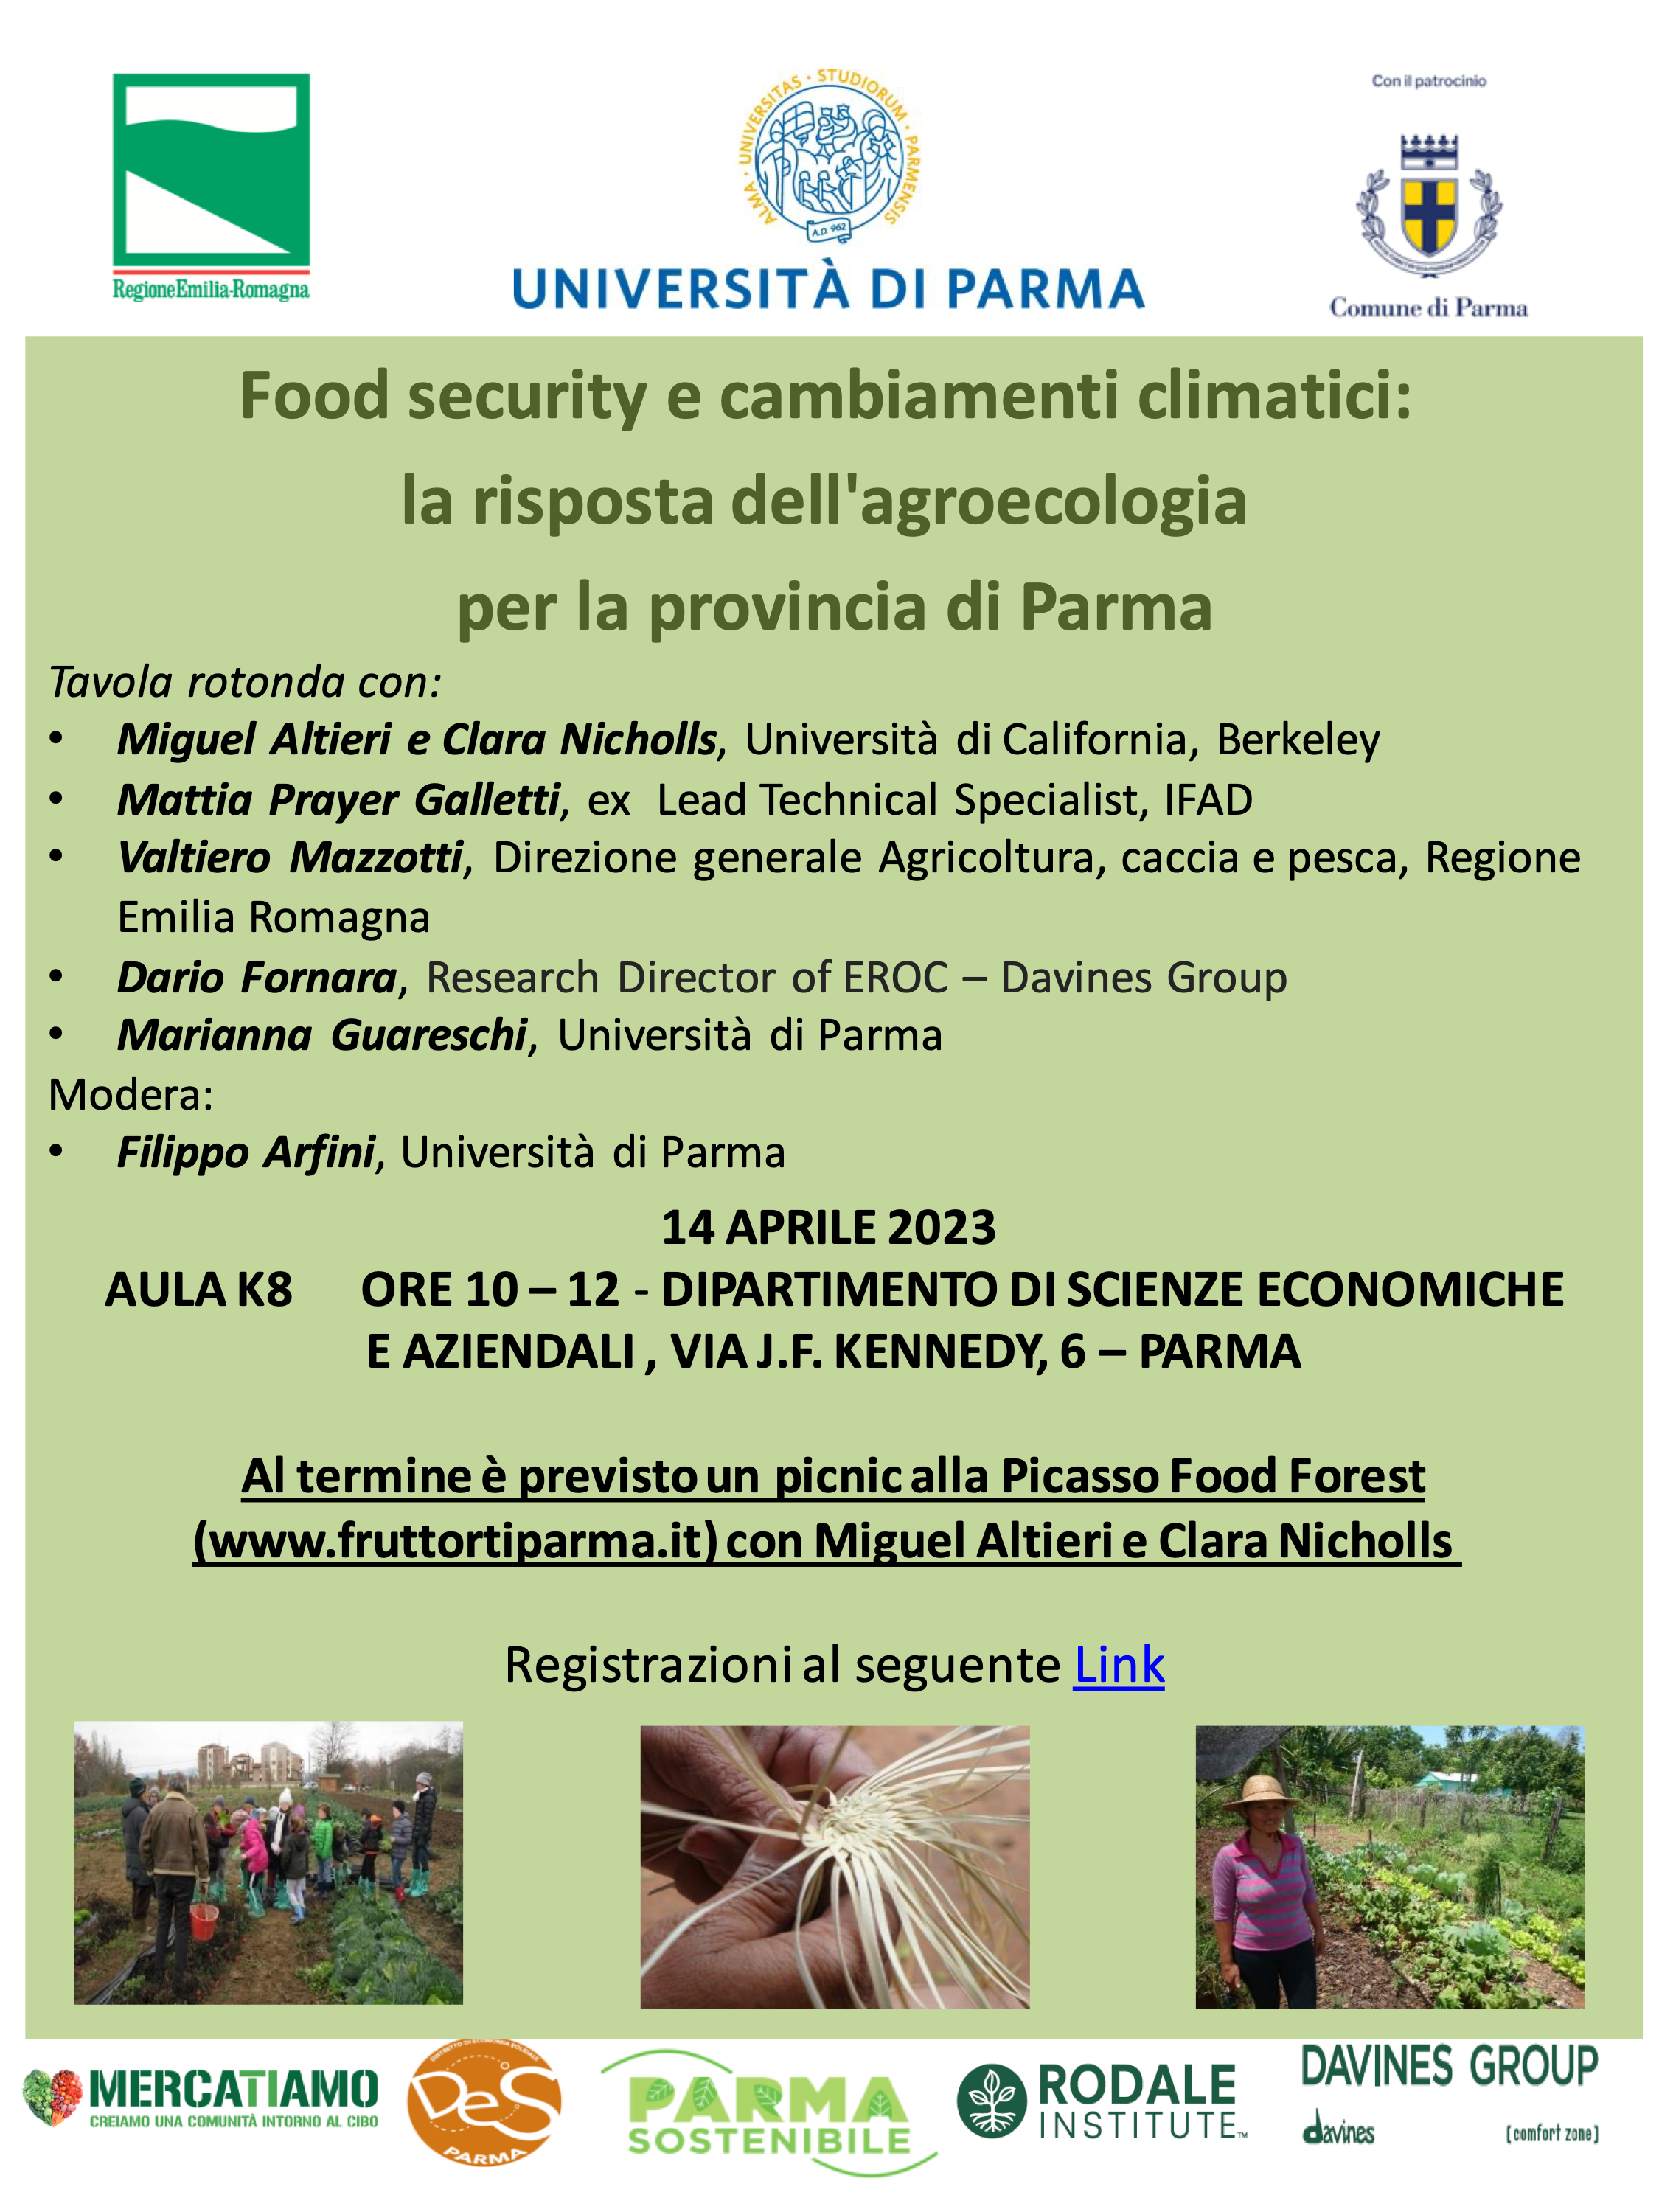 Food security e cambiamenti climatici: la risposta dell’agroecologia per la provincia di Parma